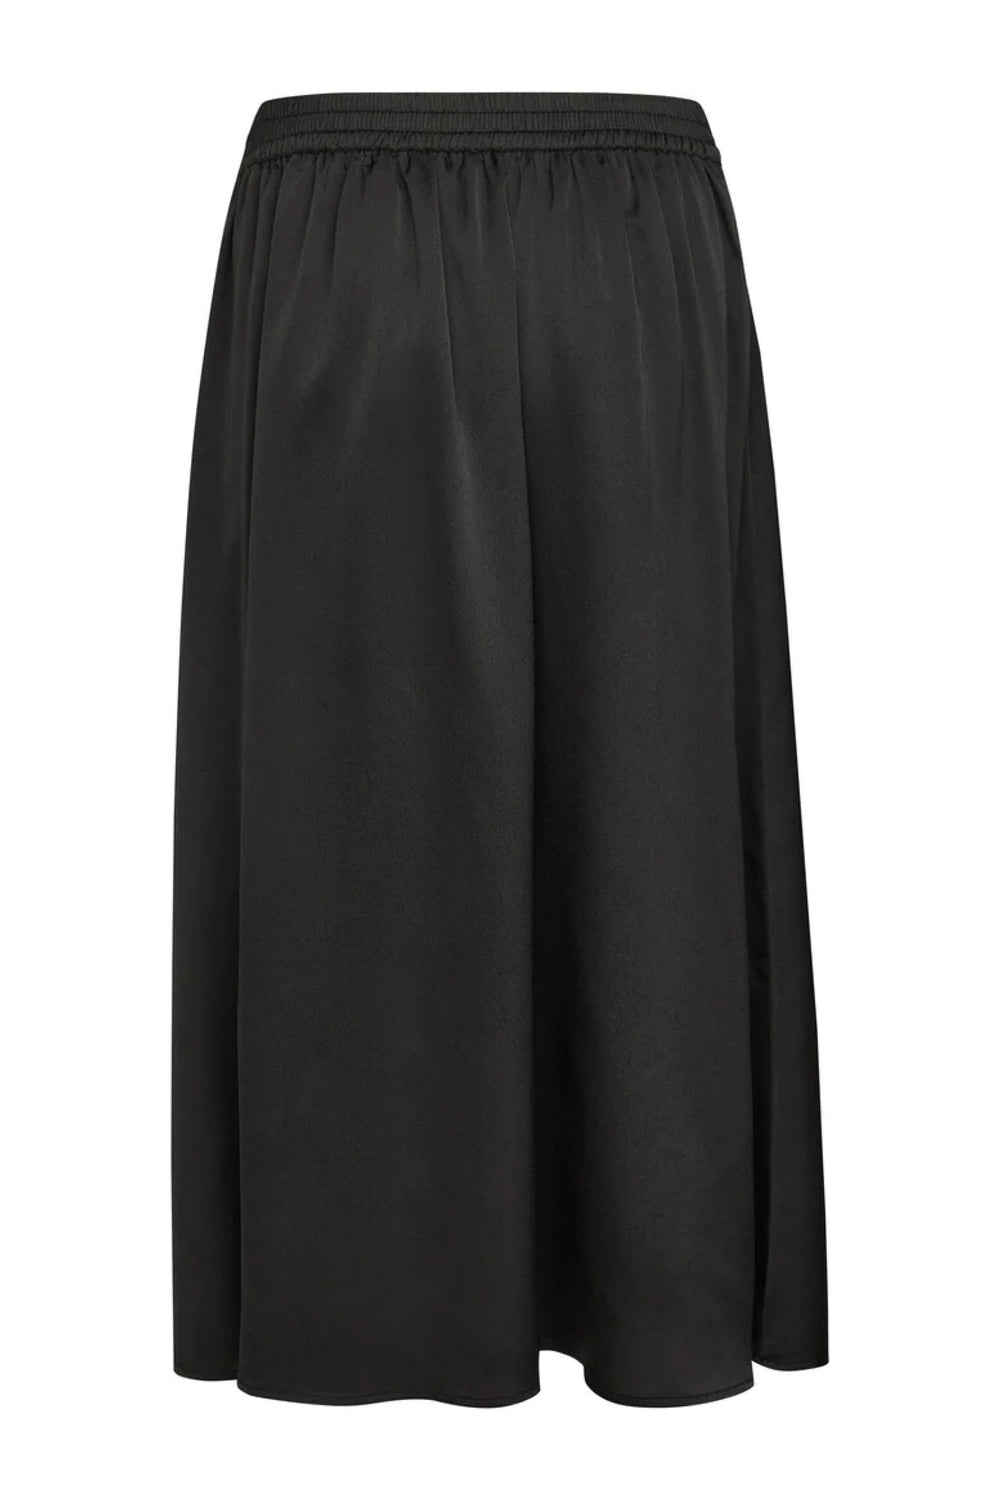 Bruuns Bazaar Women AcaciaBBAmattas skirt Skirt Black